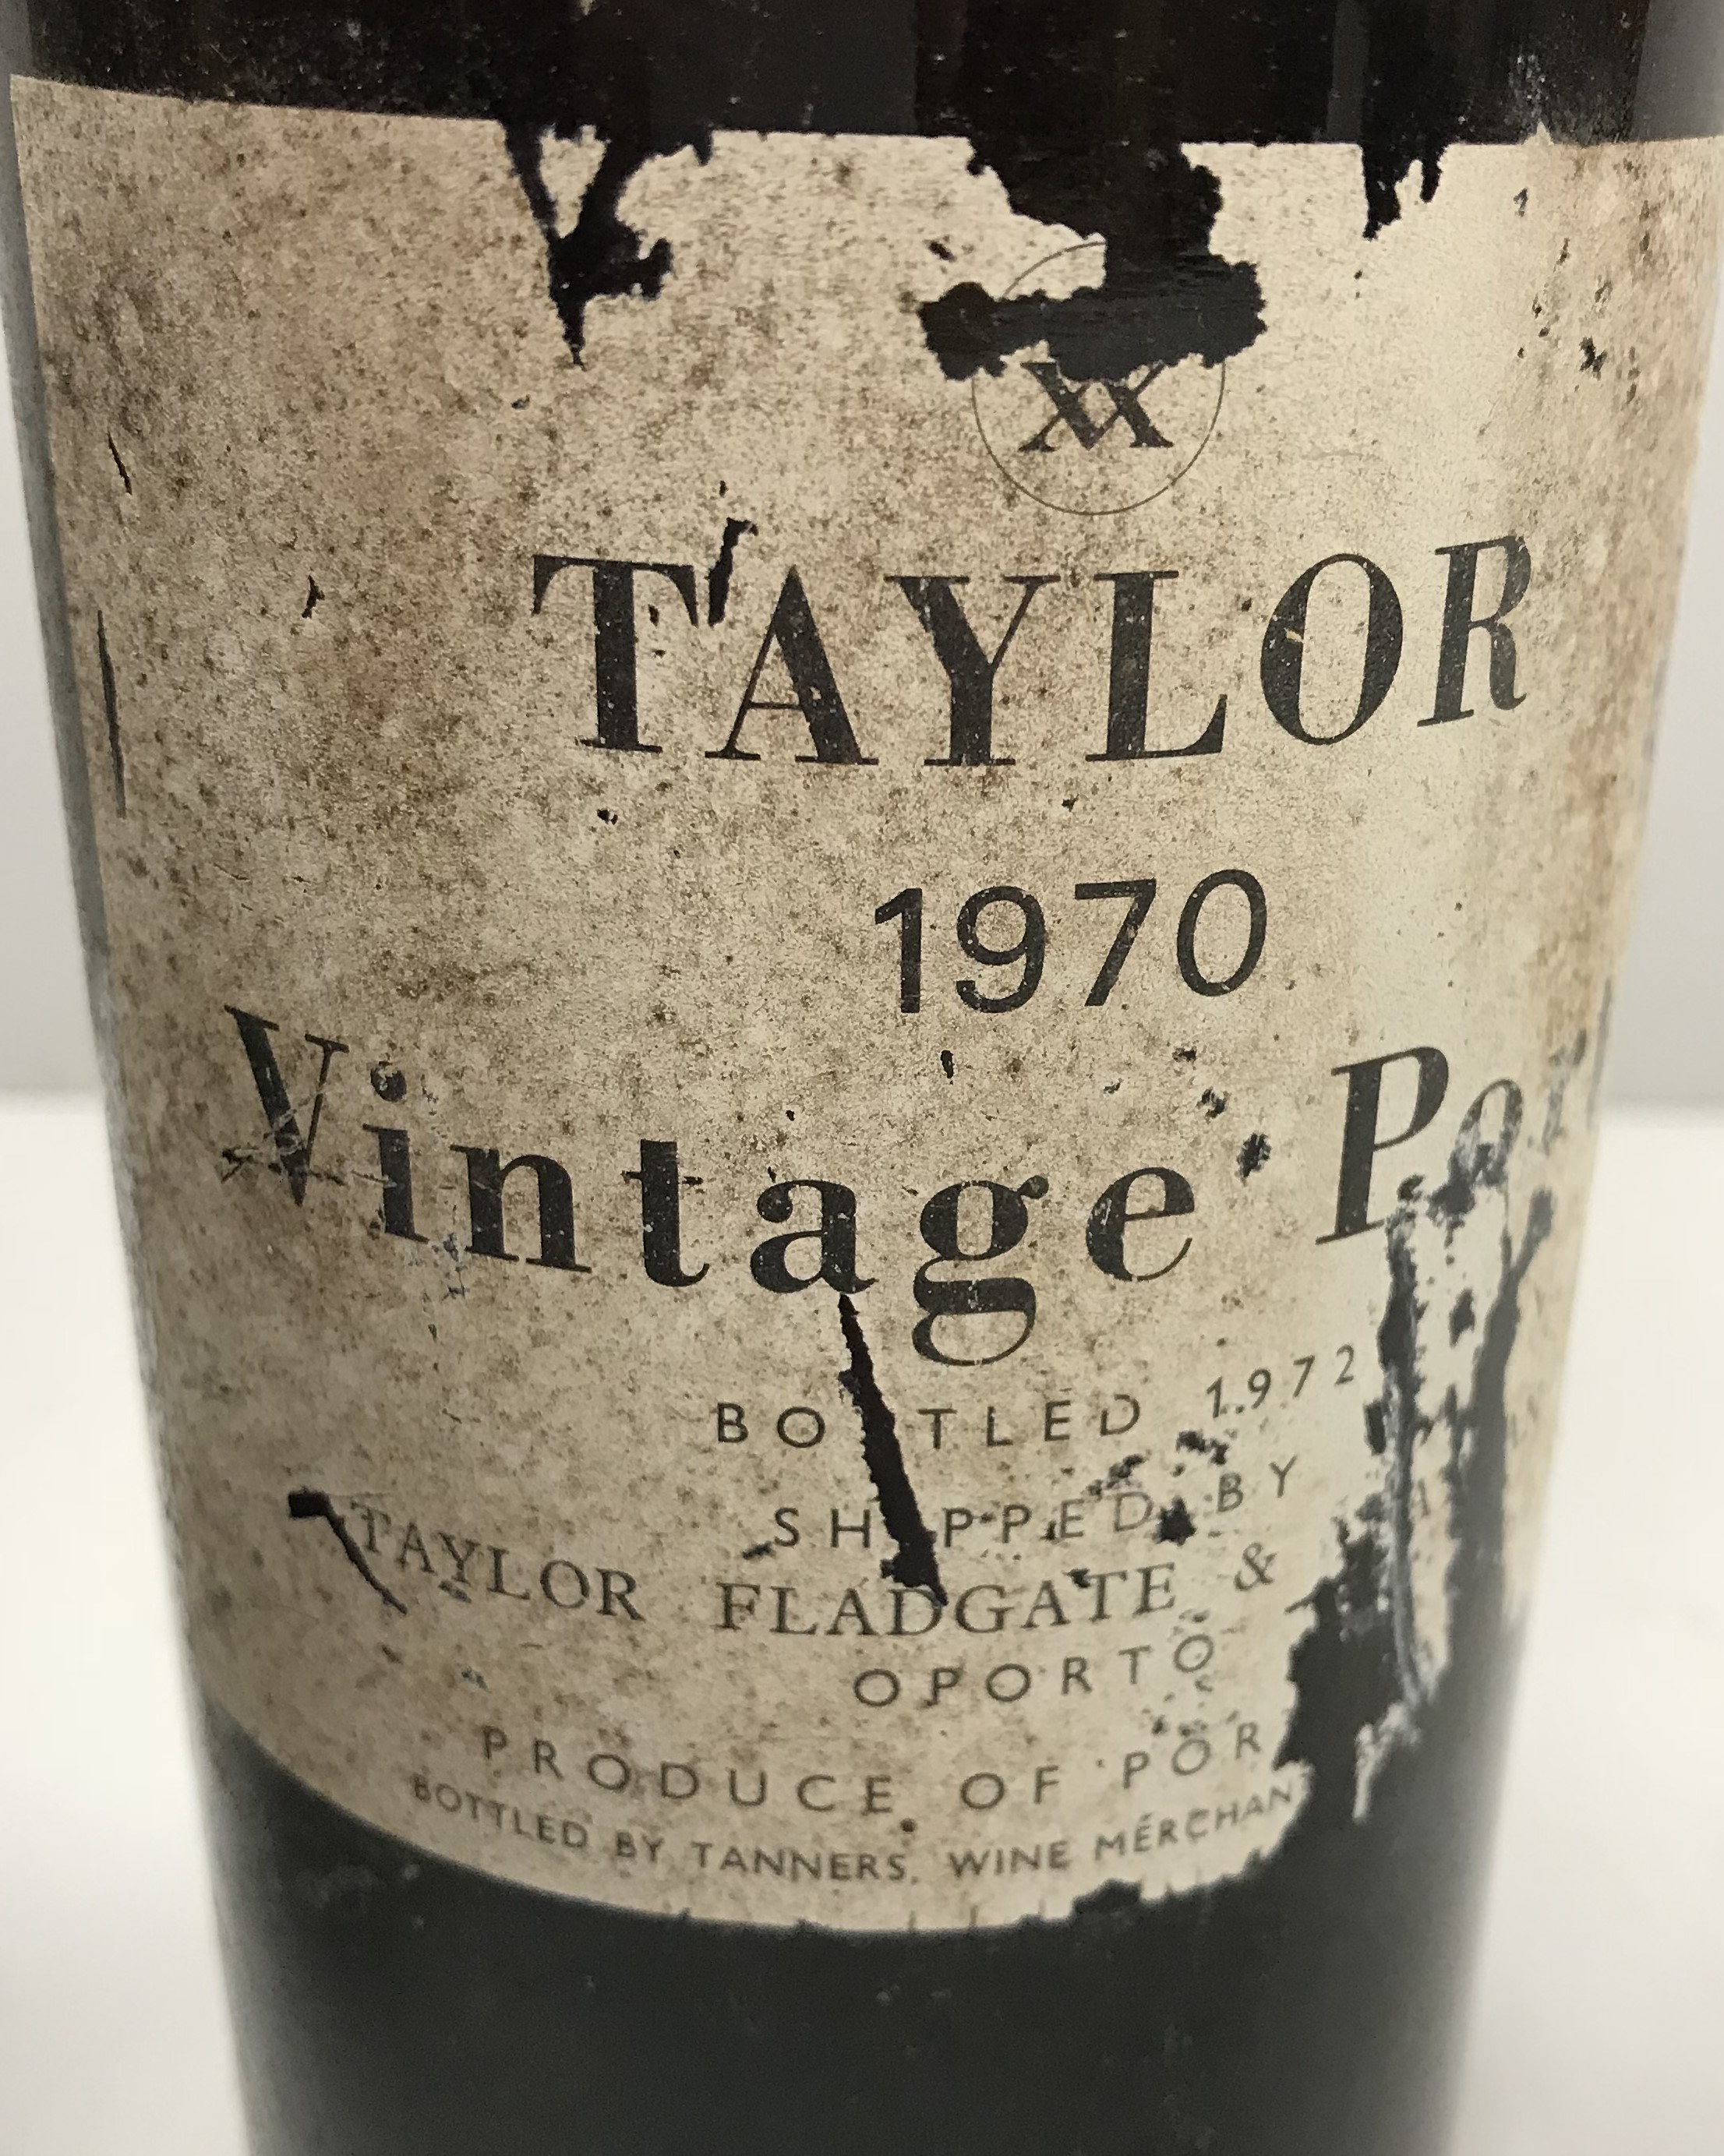 One bottle Taylor's vintage port 1970 and one bottle Croft vintage port 1970 - Image 3 of 3